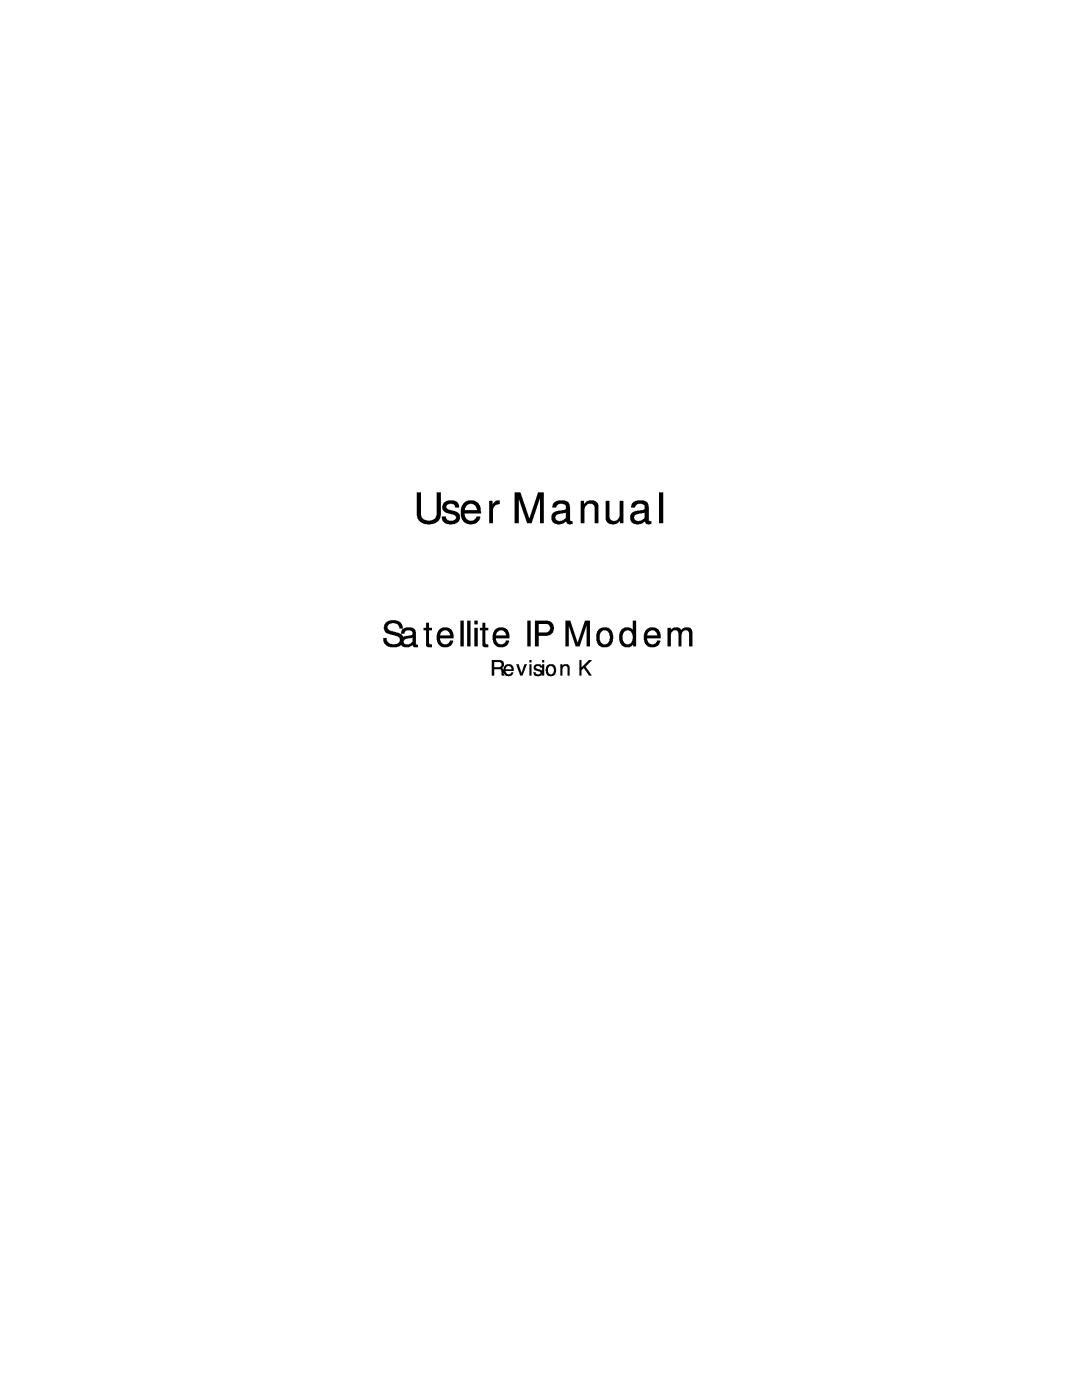 Hughes R-BGAN manual Revision K, User Manual, Satellite IP Modem 